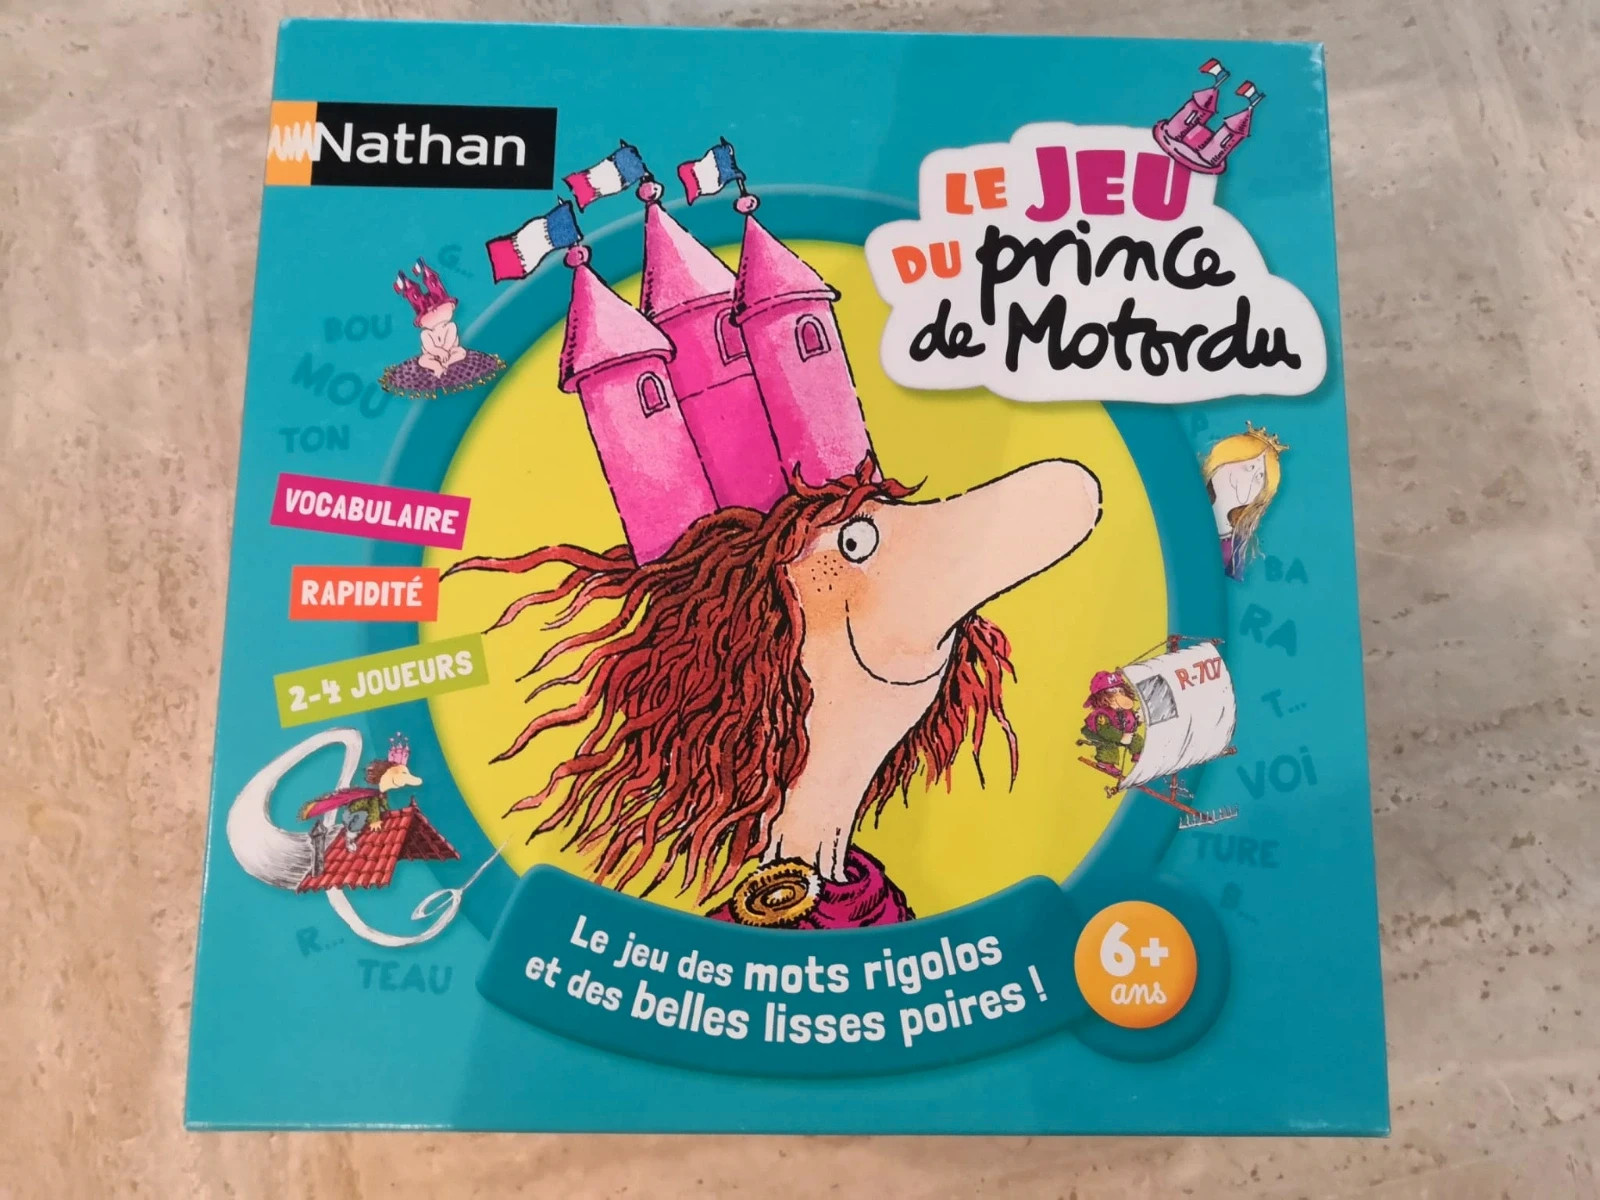 Le jeu du prince de Motordu - Nathan